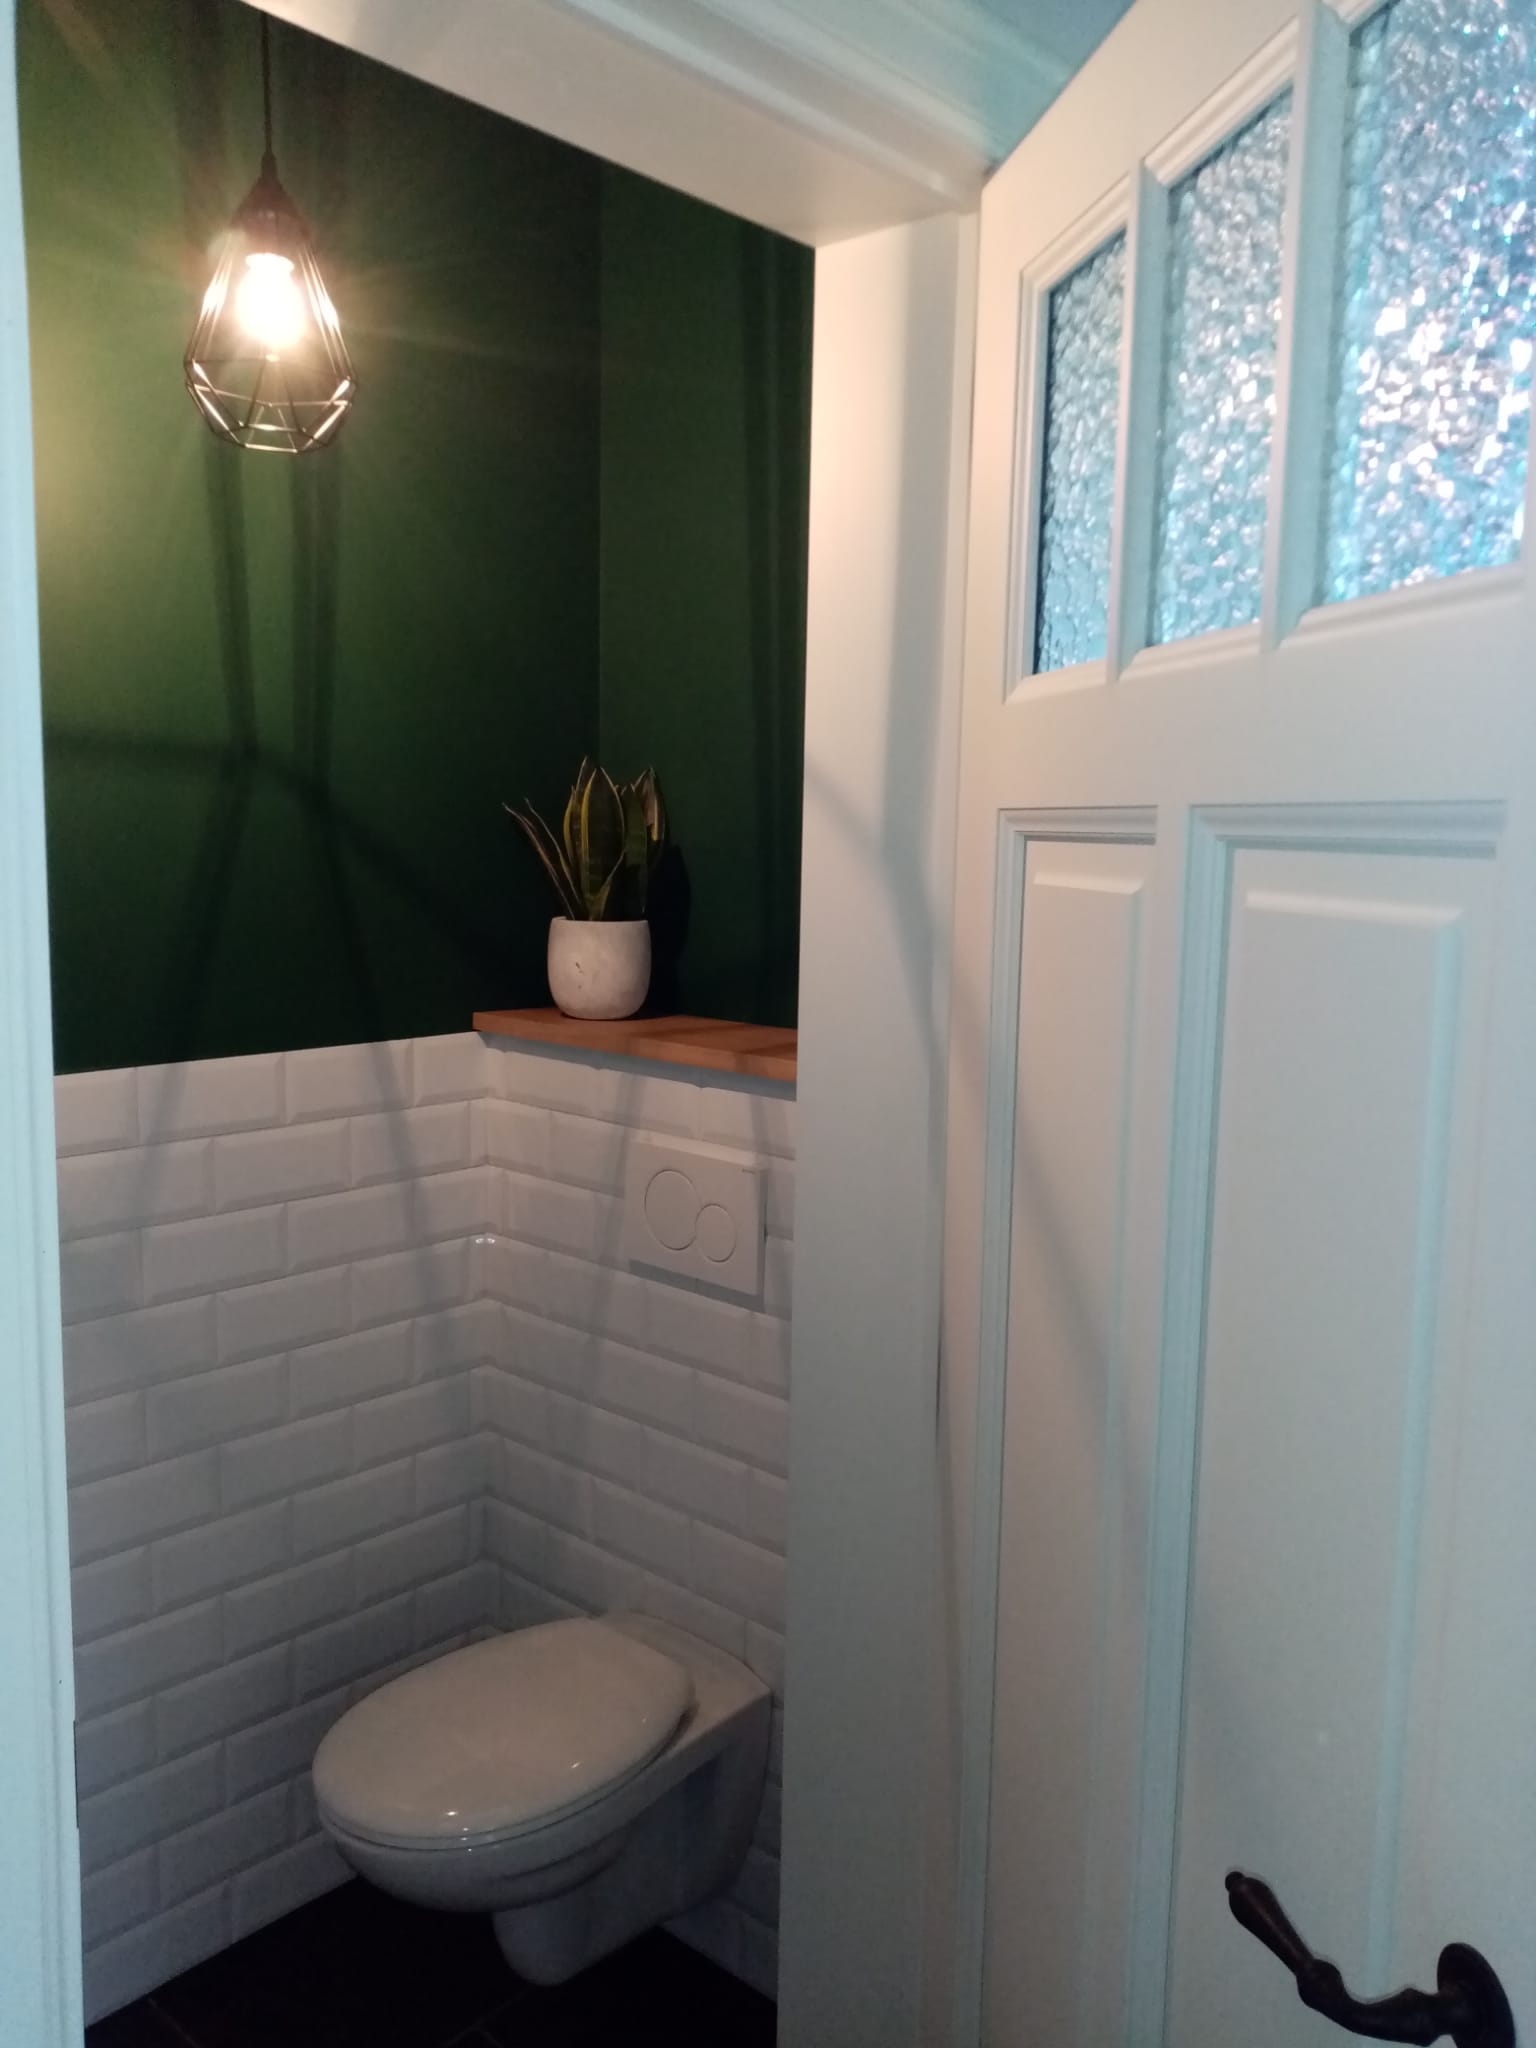 Juist afgewekt toilet met tegels aan de muur